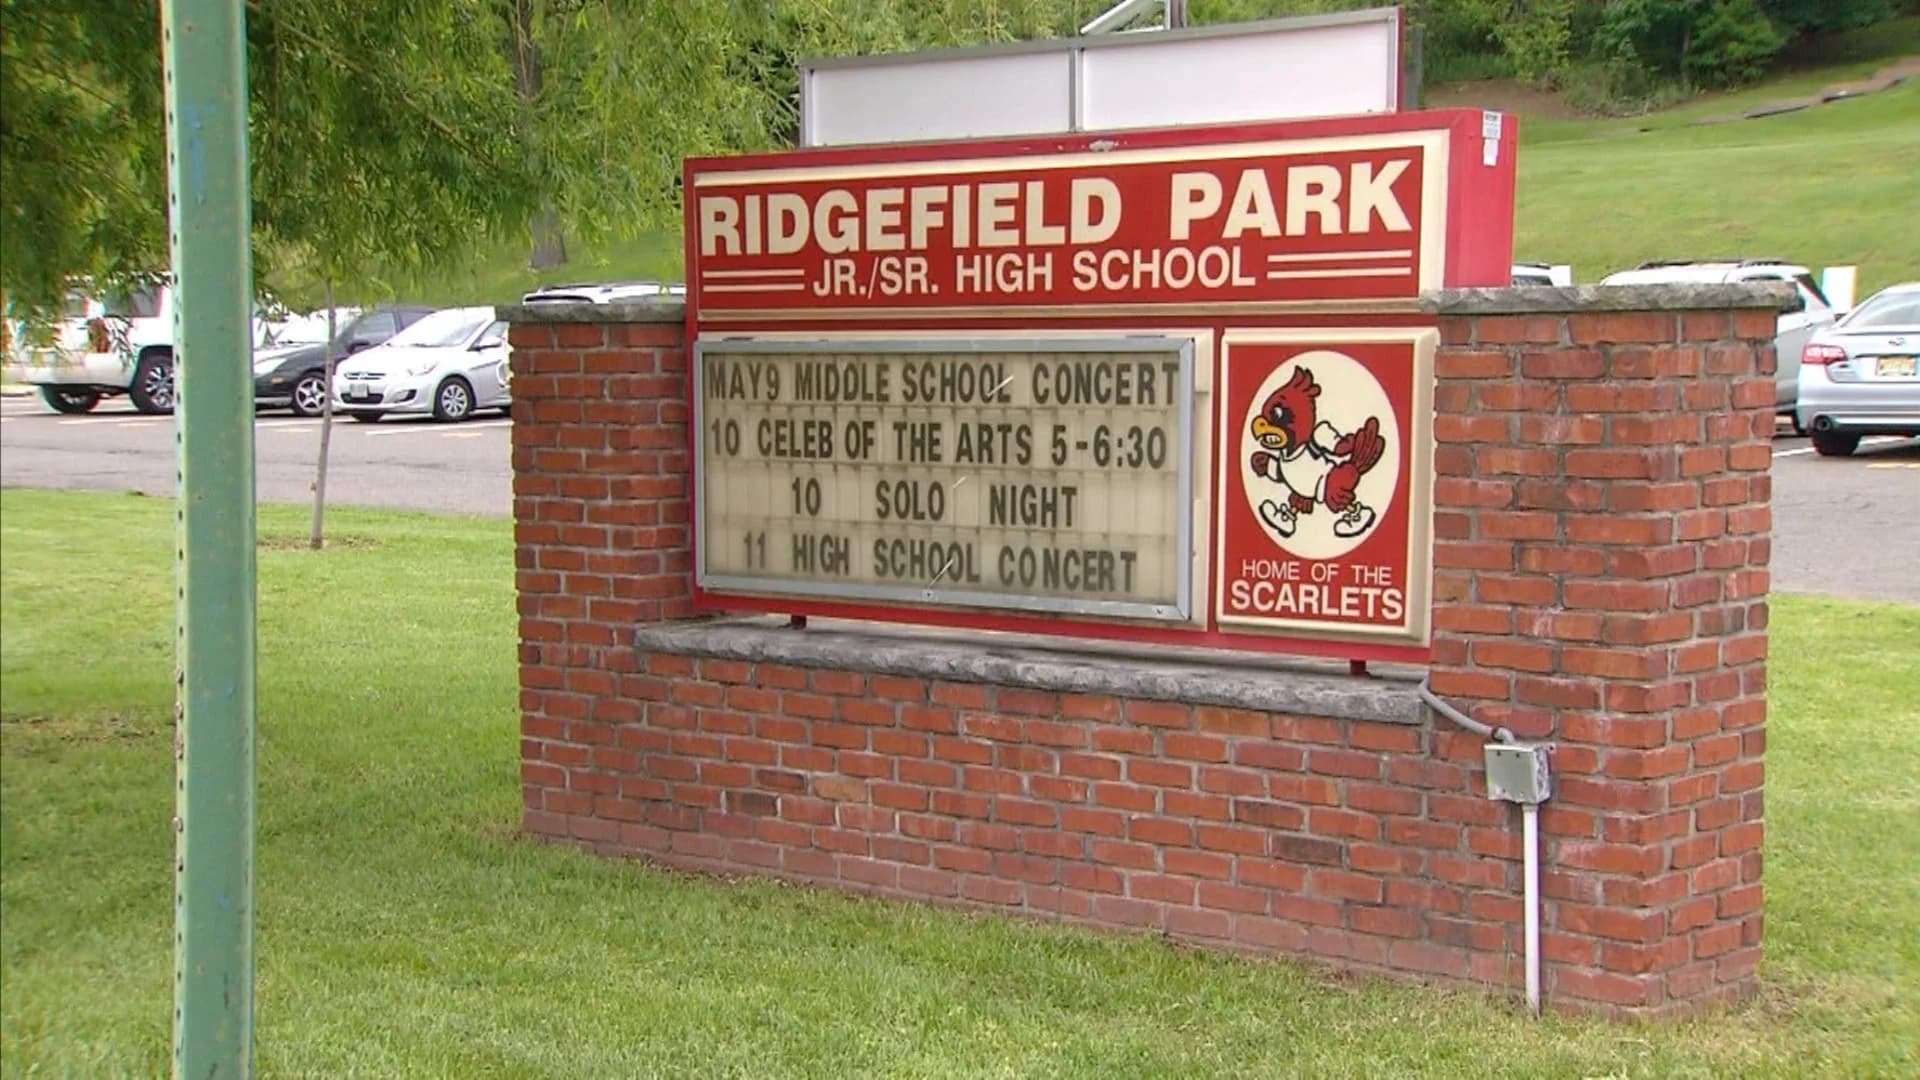 Ridgefield Park School District faces layoffs